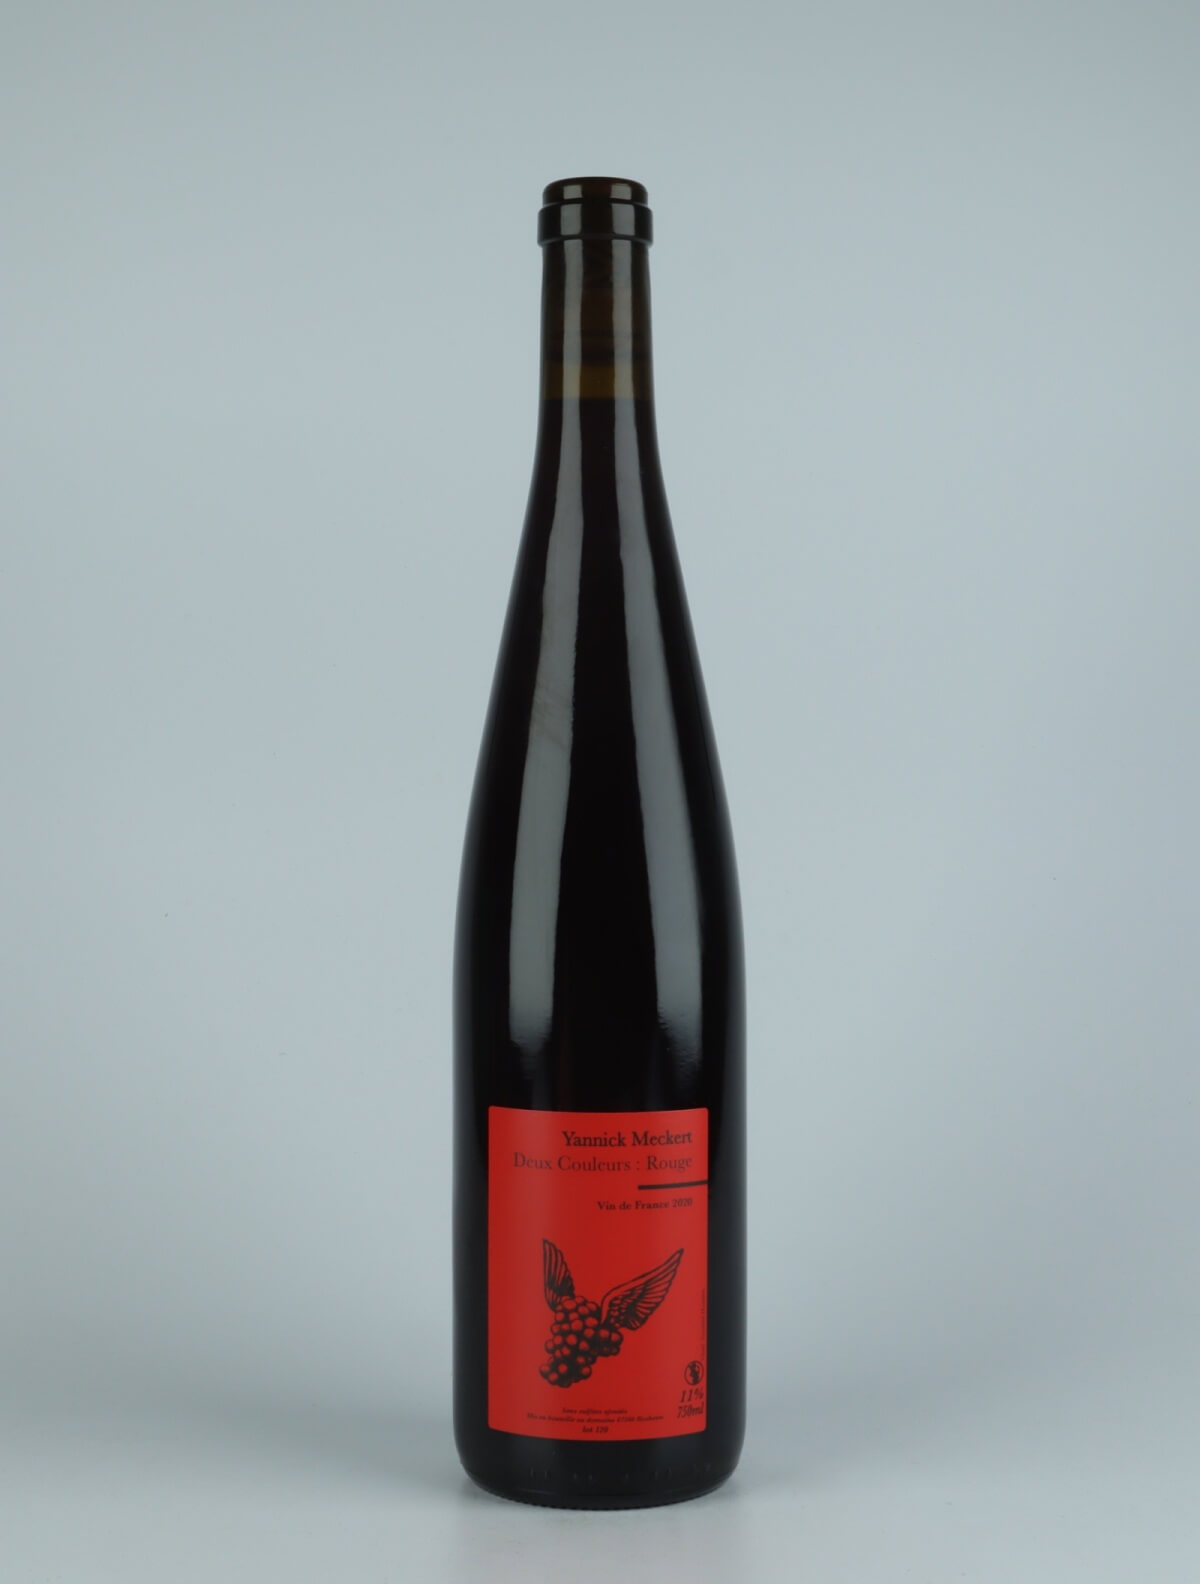 En flaske 2020 Deux Couleurs Rouge Rødvin fra Yannick Meckert, Alsace i Frankrig